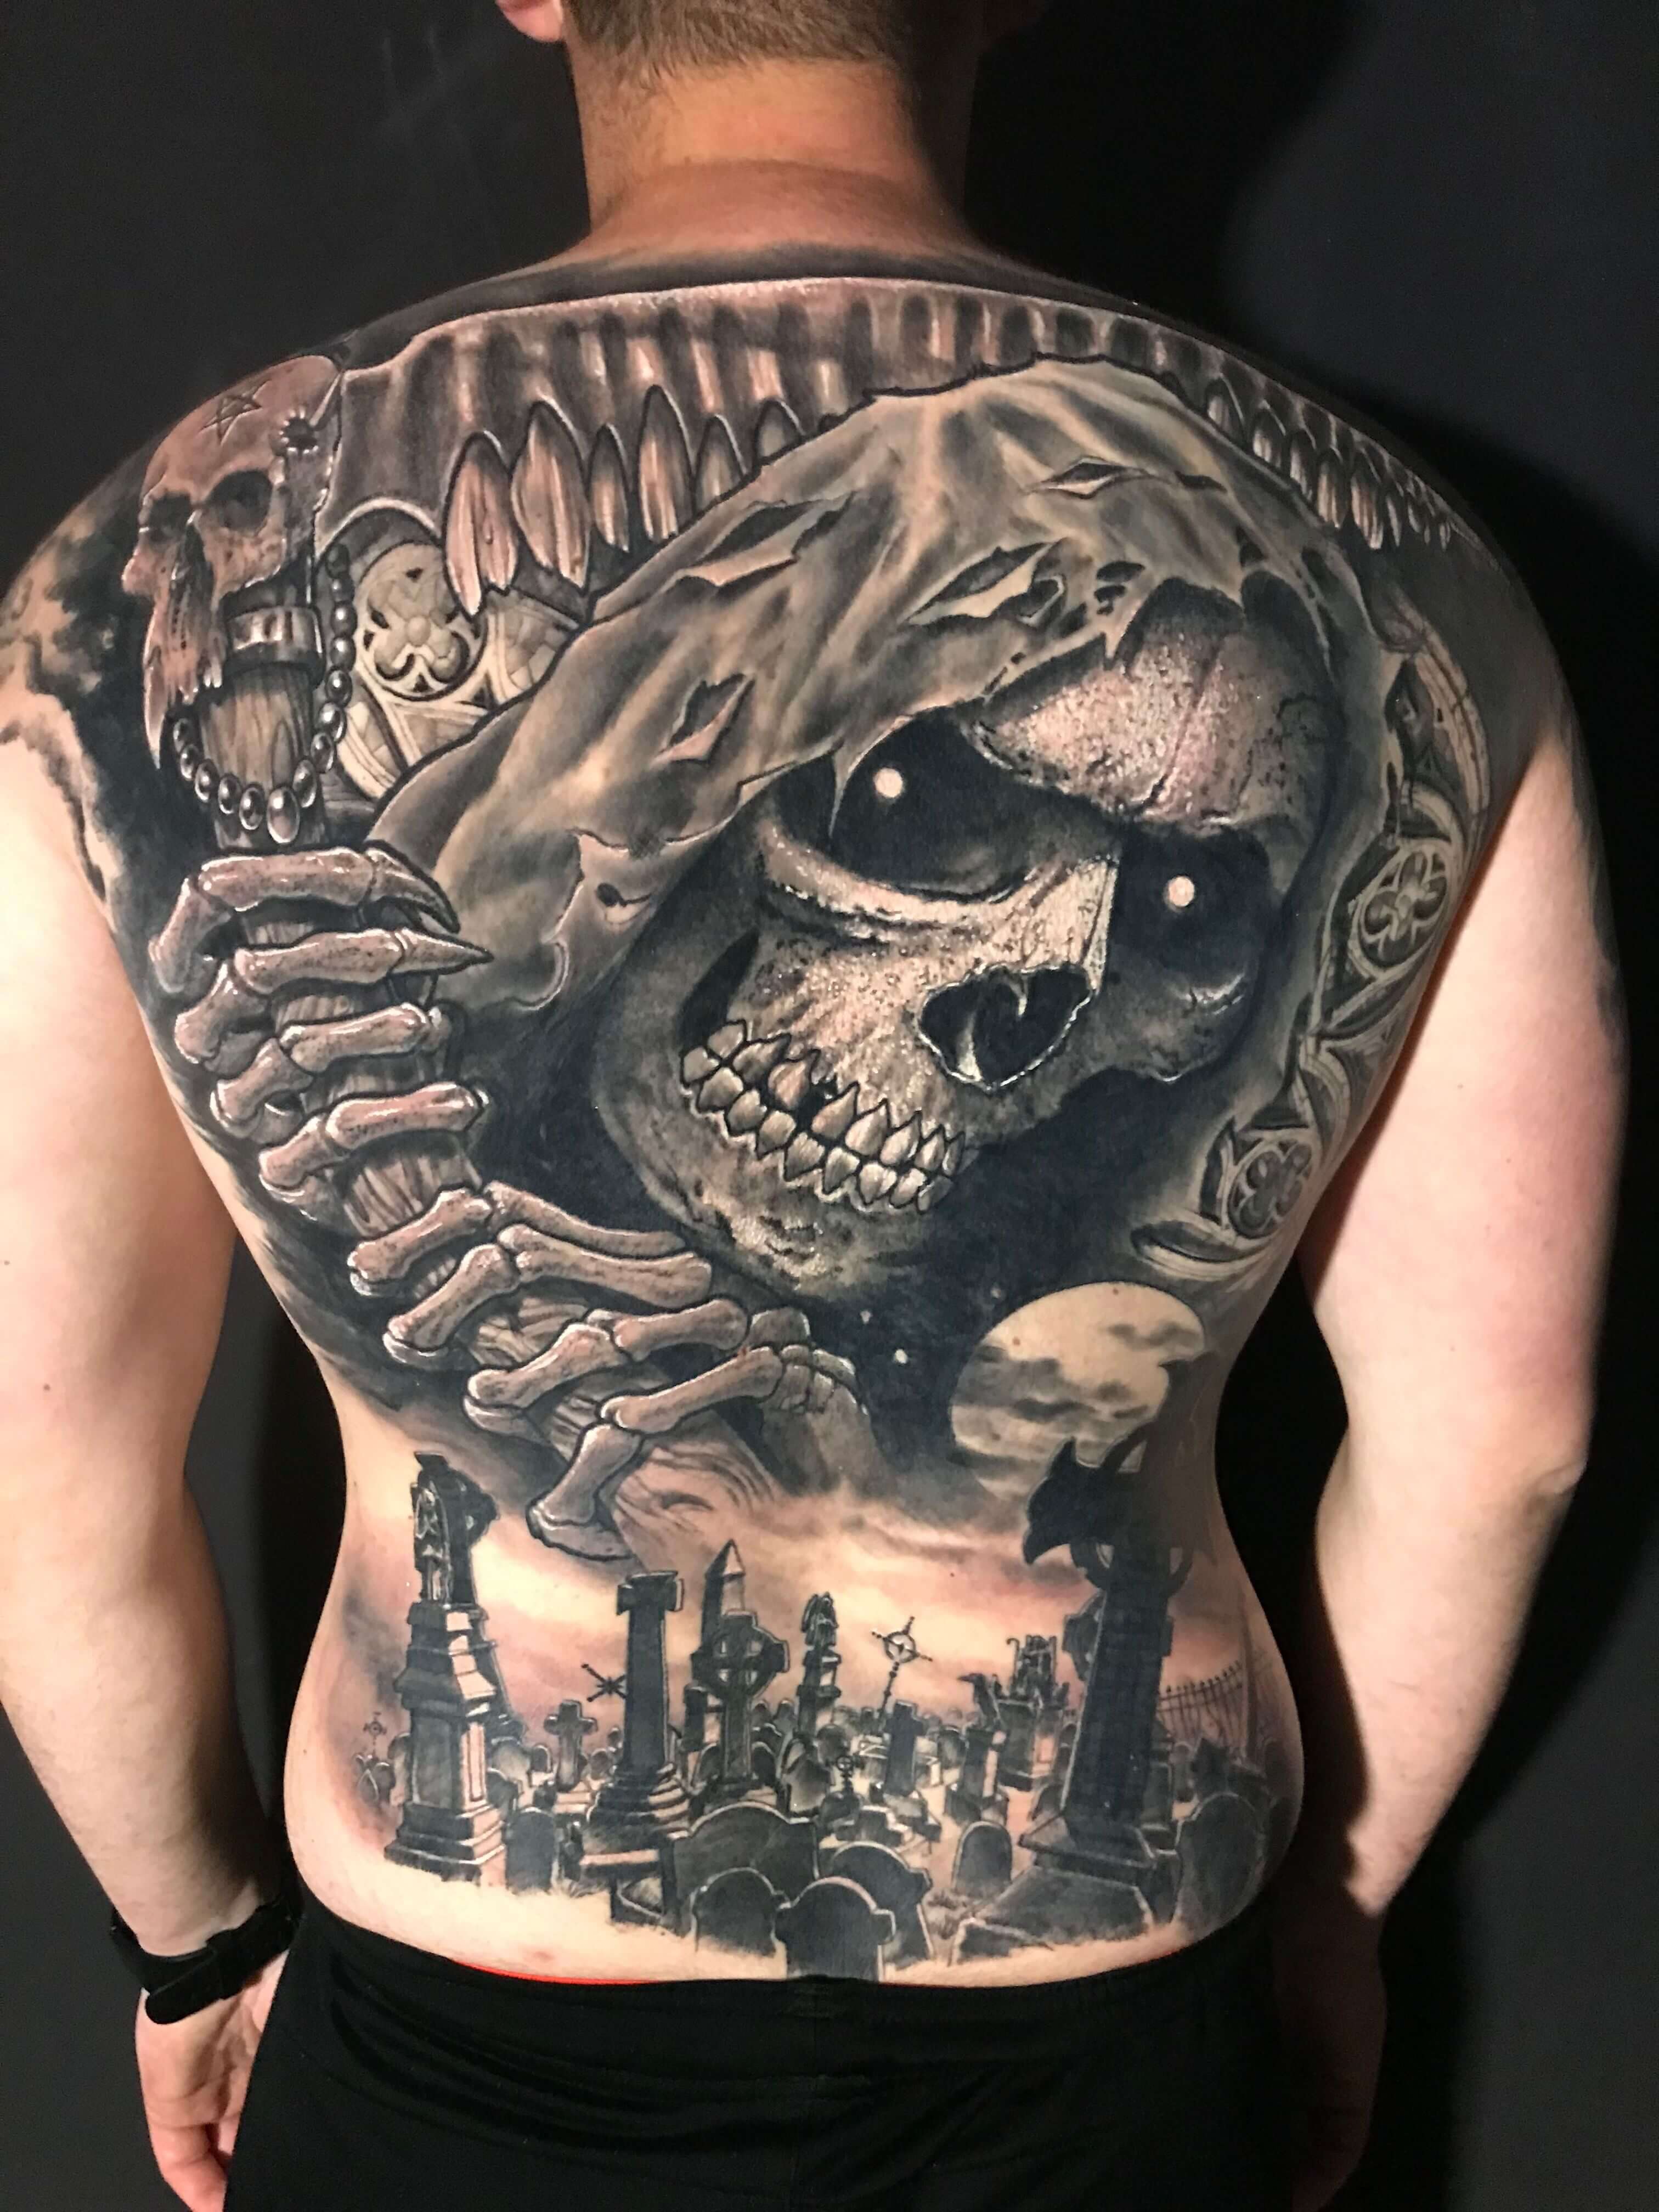 Tatuaje de la muerte a espalda completa